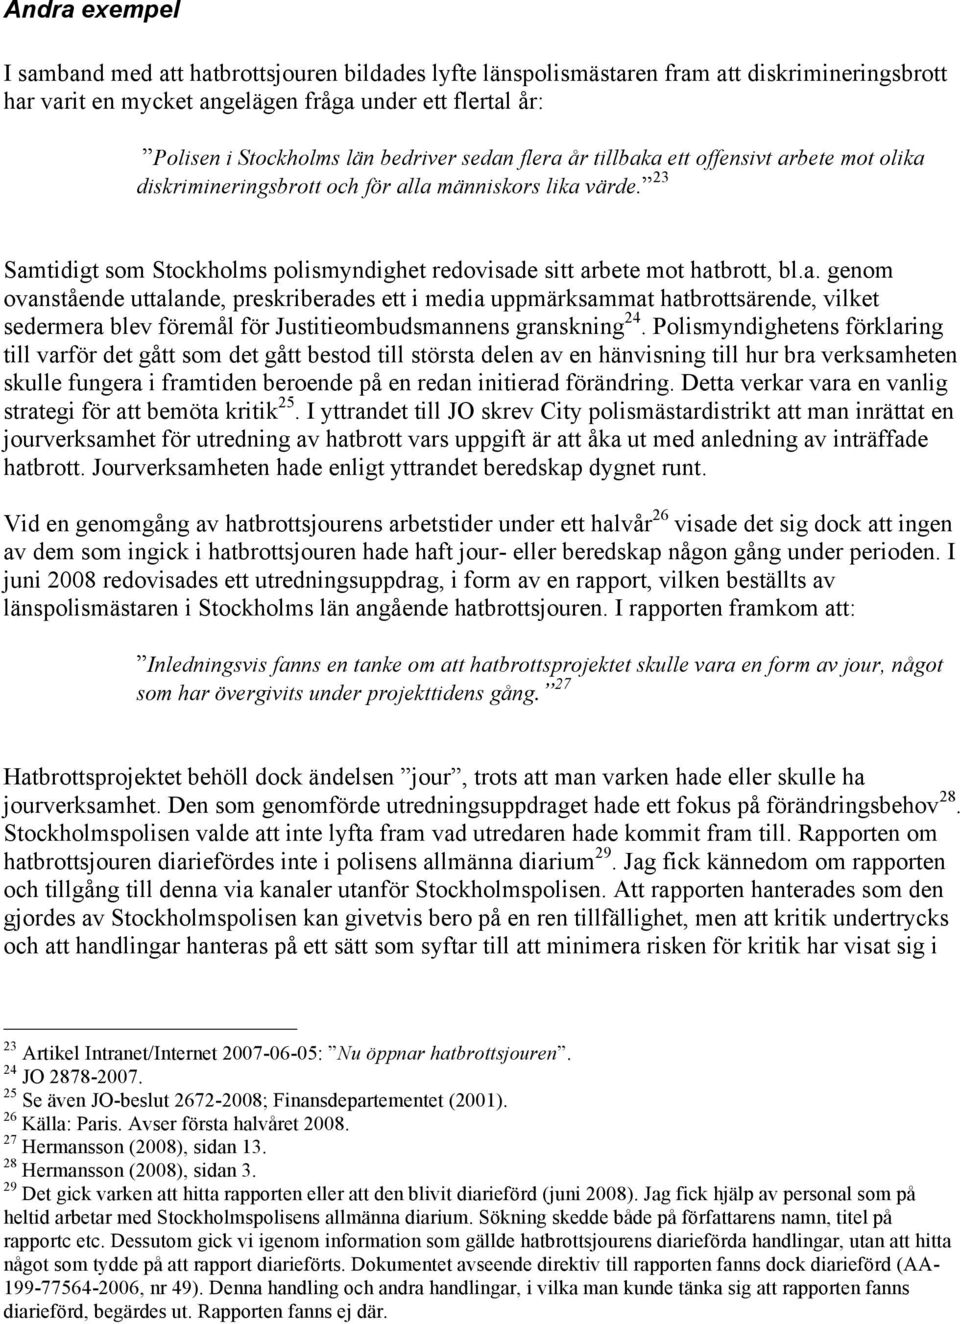 23 Samtidigt som Stockholms polismyndighet redovisade sitt arbete mot hatbrott, bl.a. genom ovanstående uttalande, preskriberades ett i media uppmärksammat hatbrottsärende, vilket sedermera blev föremål för Justitieombudsmannens granskning 24.